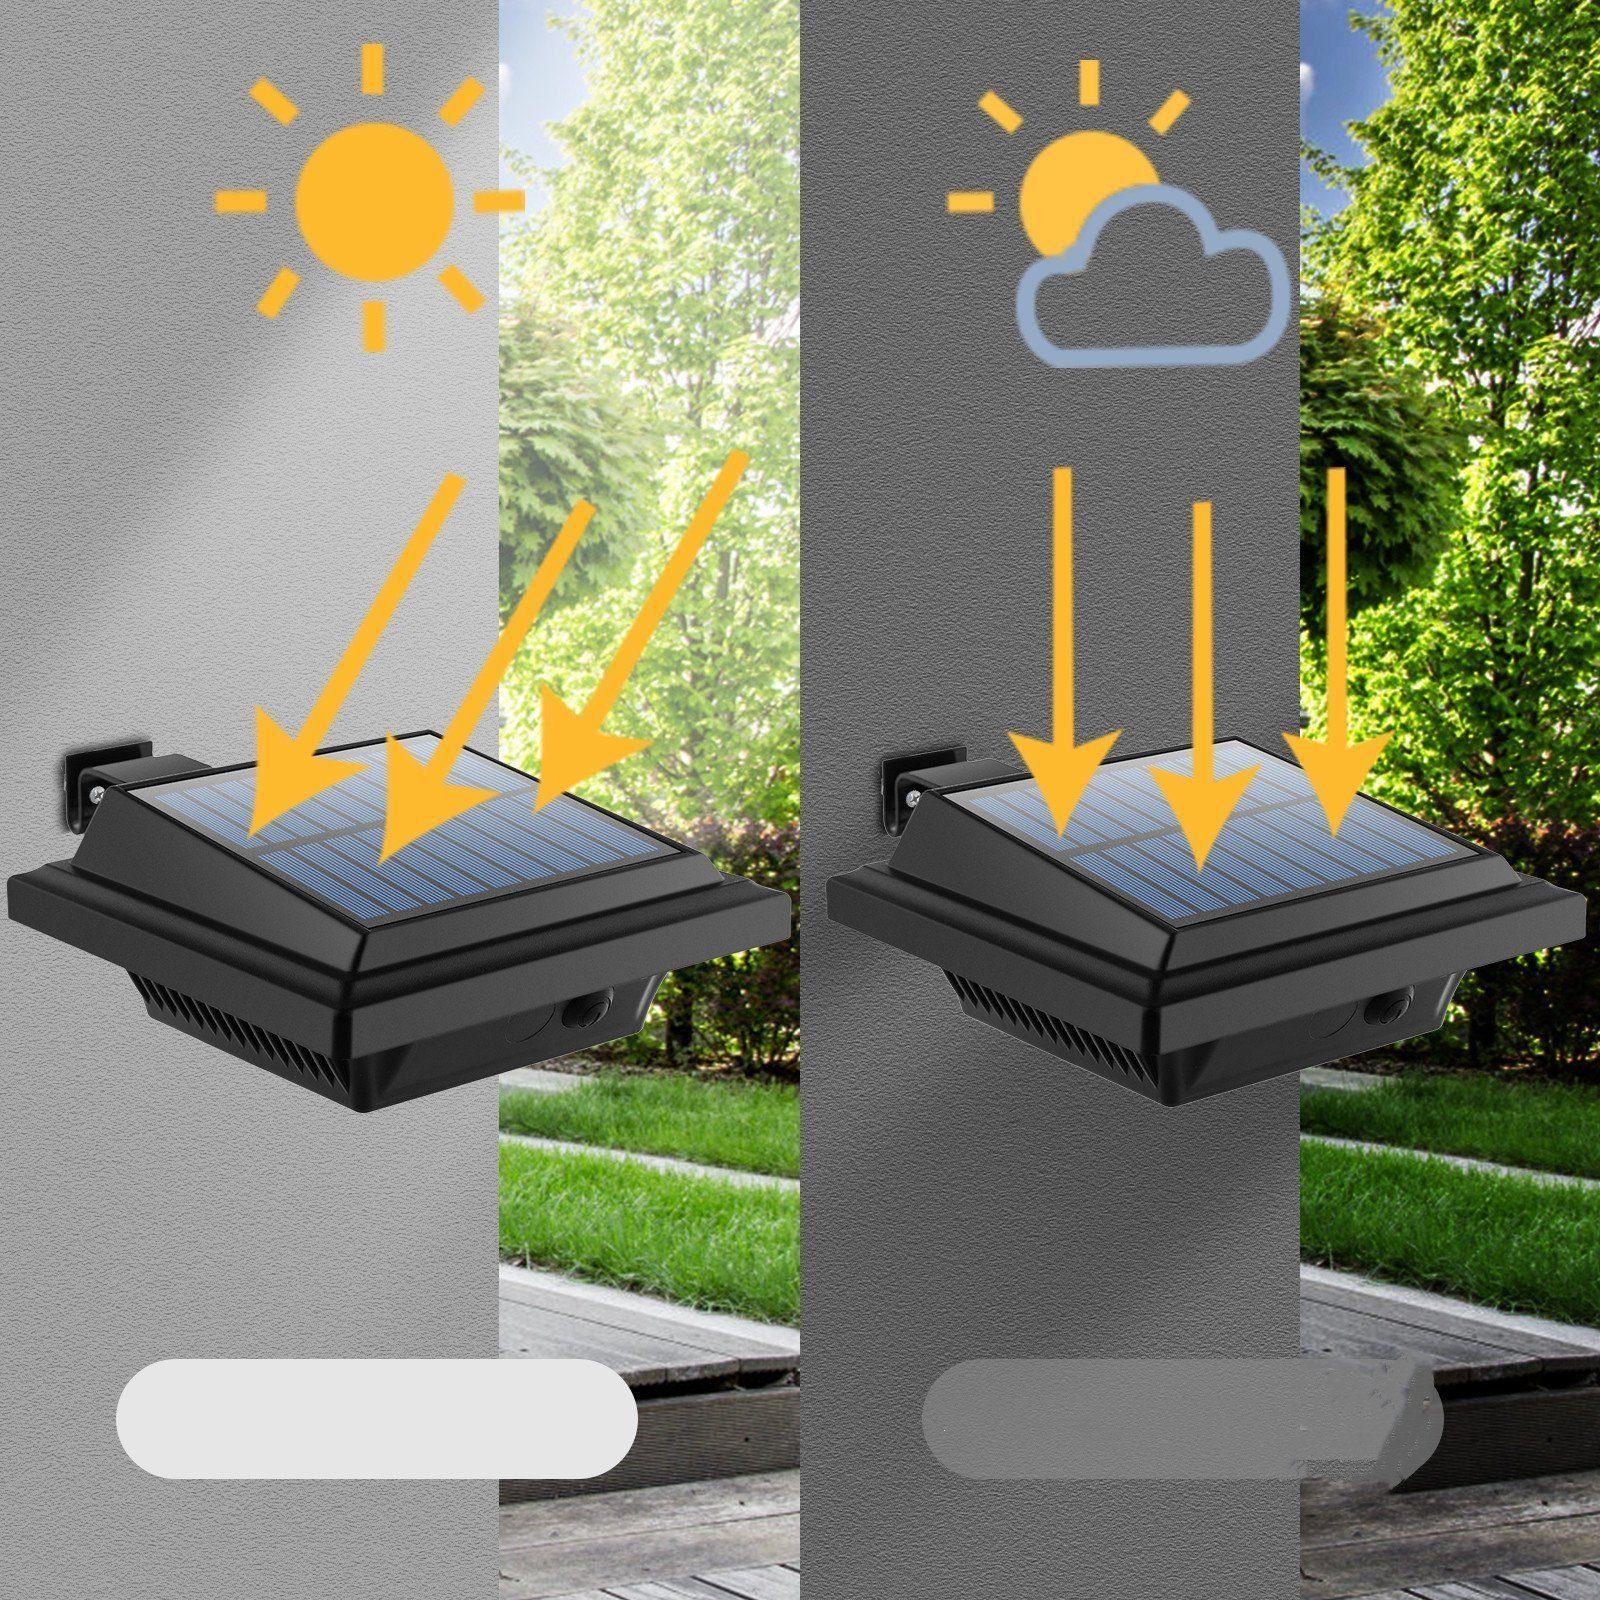 KEENZO Dachrinnenleuchte für Außen dachrinnen solarleuchten Solarlampen 8Stk.40LEDs